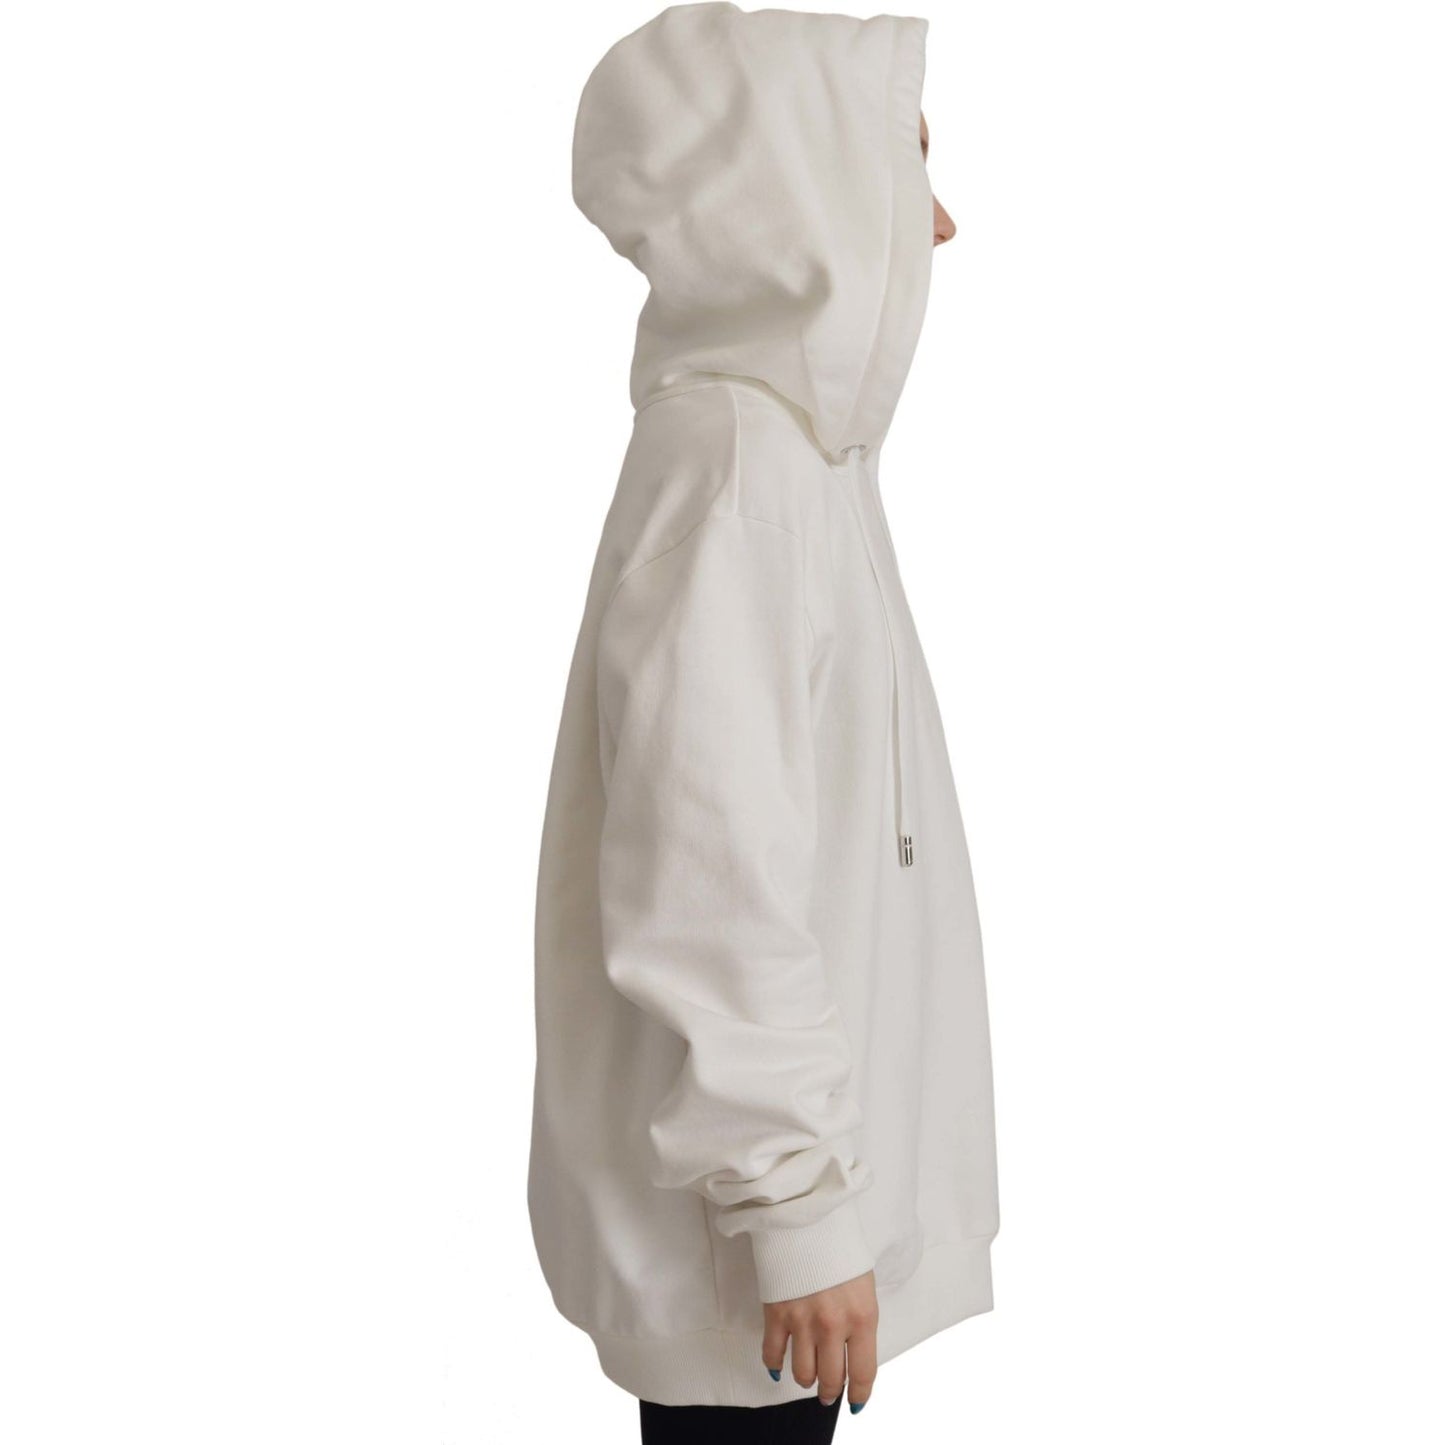 Dolce & GabbanaChic White Hooded Pullover SweaterMcRichard Designer Brands£459.00